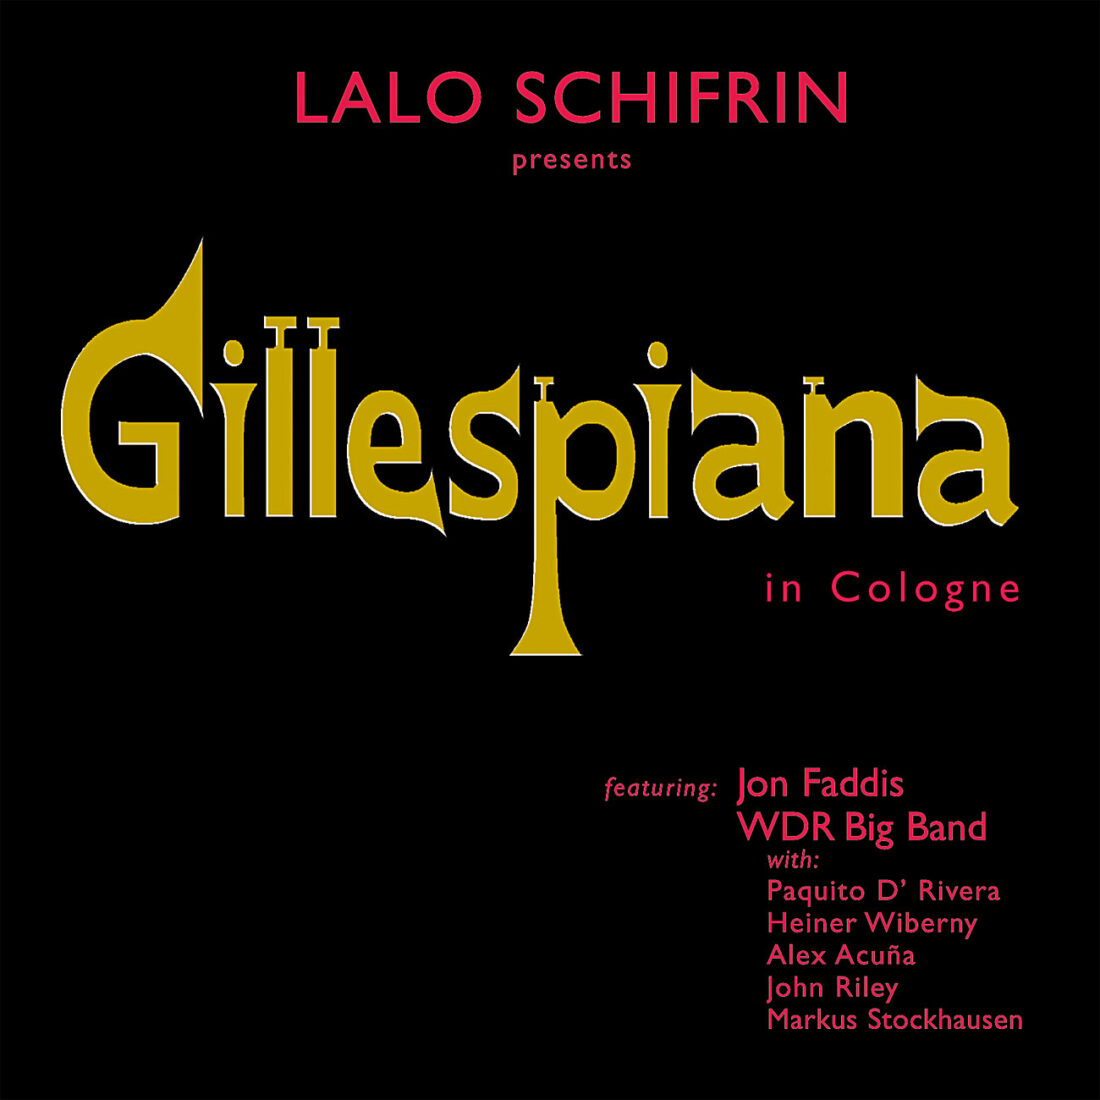 Gillespiana in Cologne Composed by Lalo Schifrin, Featuring Jon Faddis, Paquito D’ Rivera